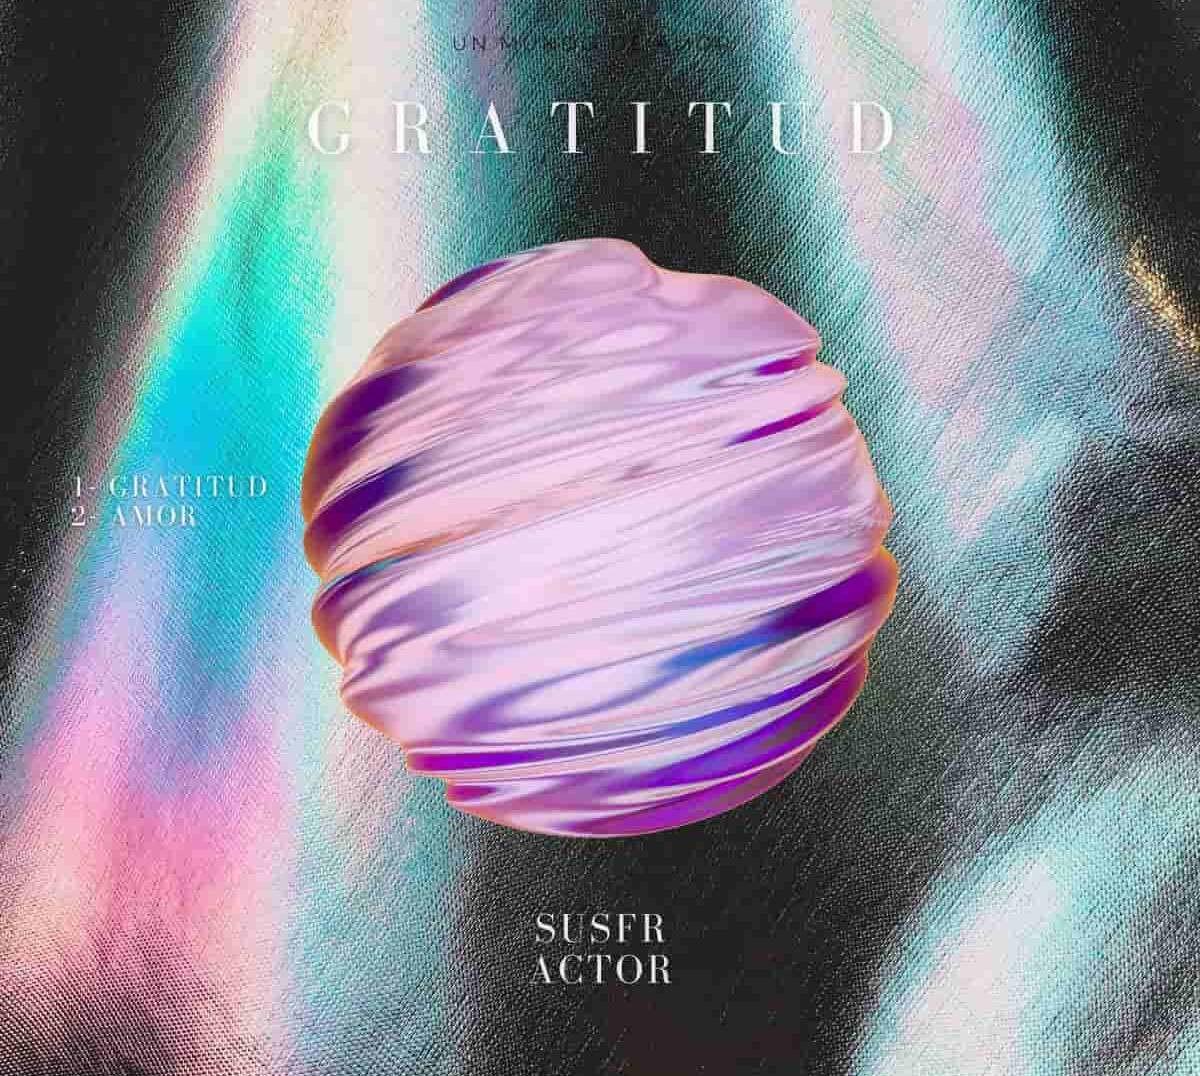 Susfractor presenta su nuevo EP llamado Gratitud